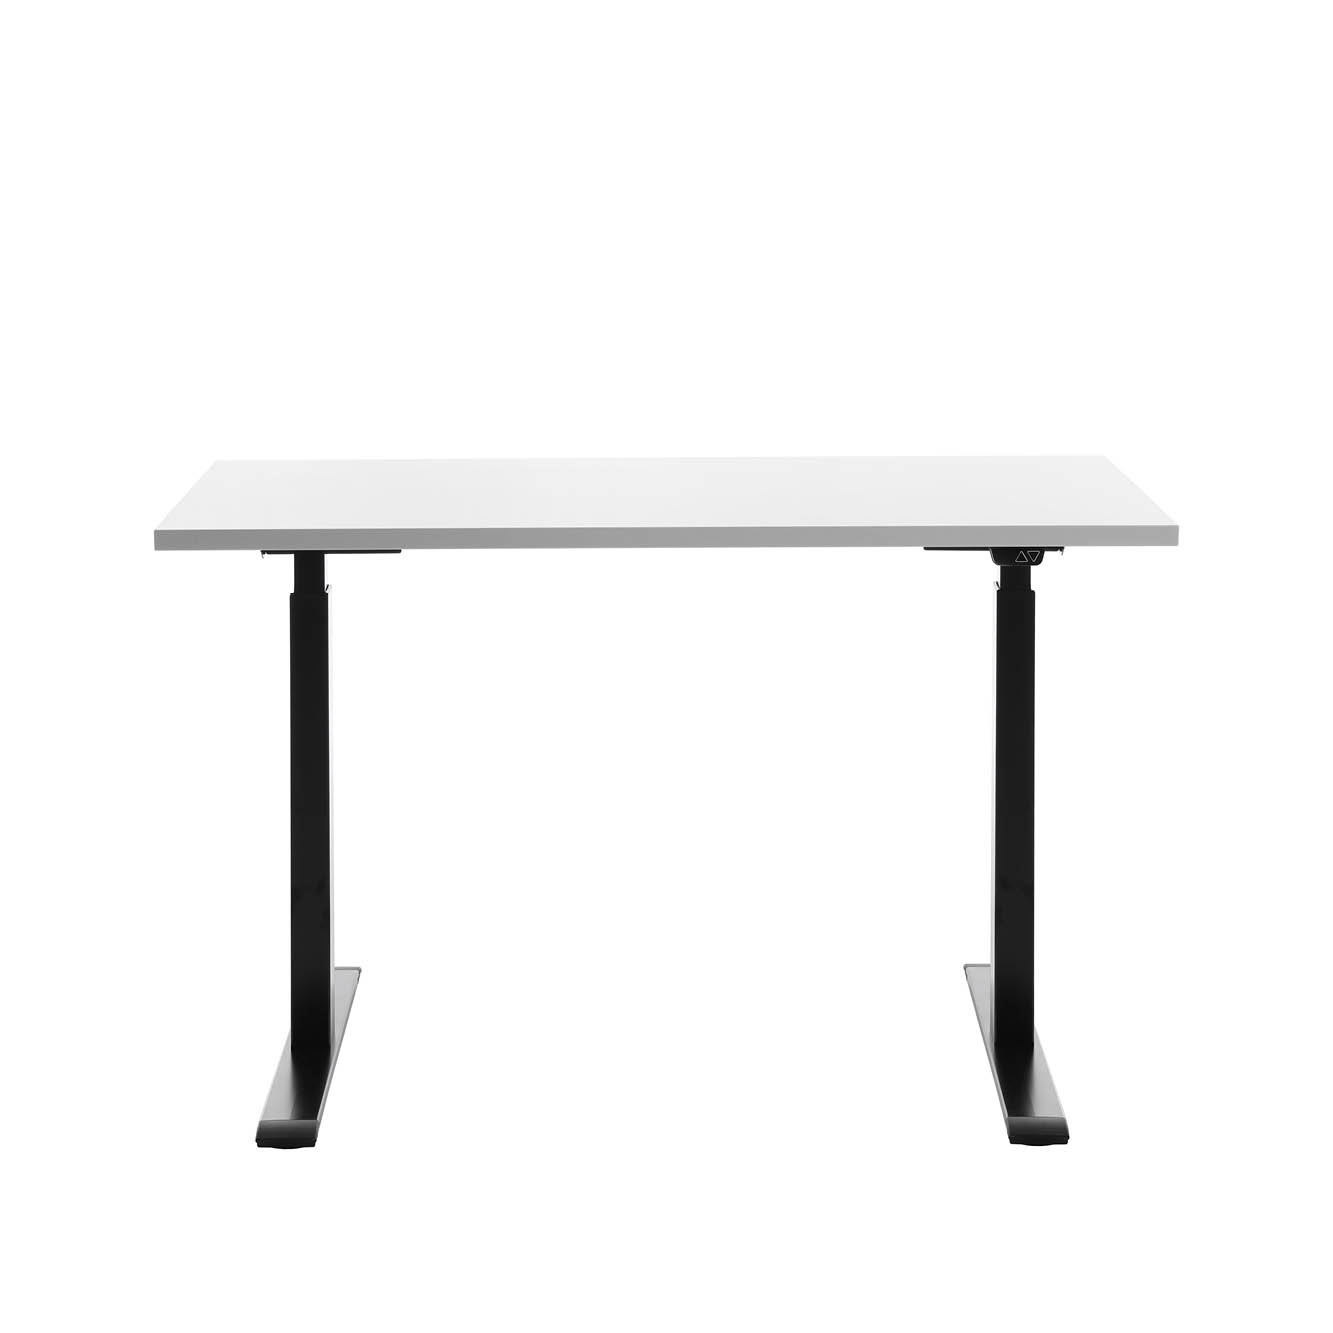 120 x 60 cm Schreibtisch Topstar Ergo E-Table höhenverstellbar - schwarz, weiss